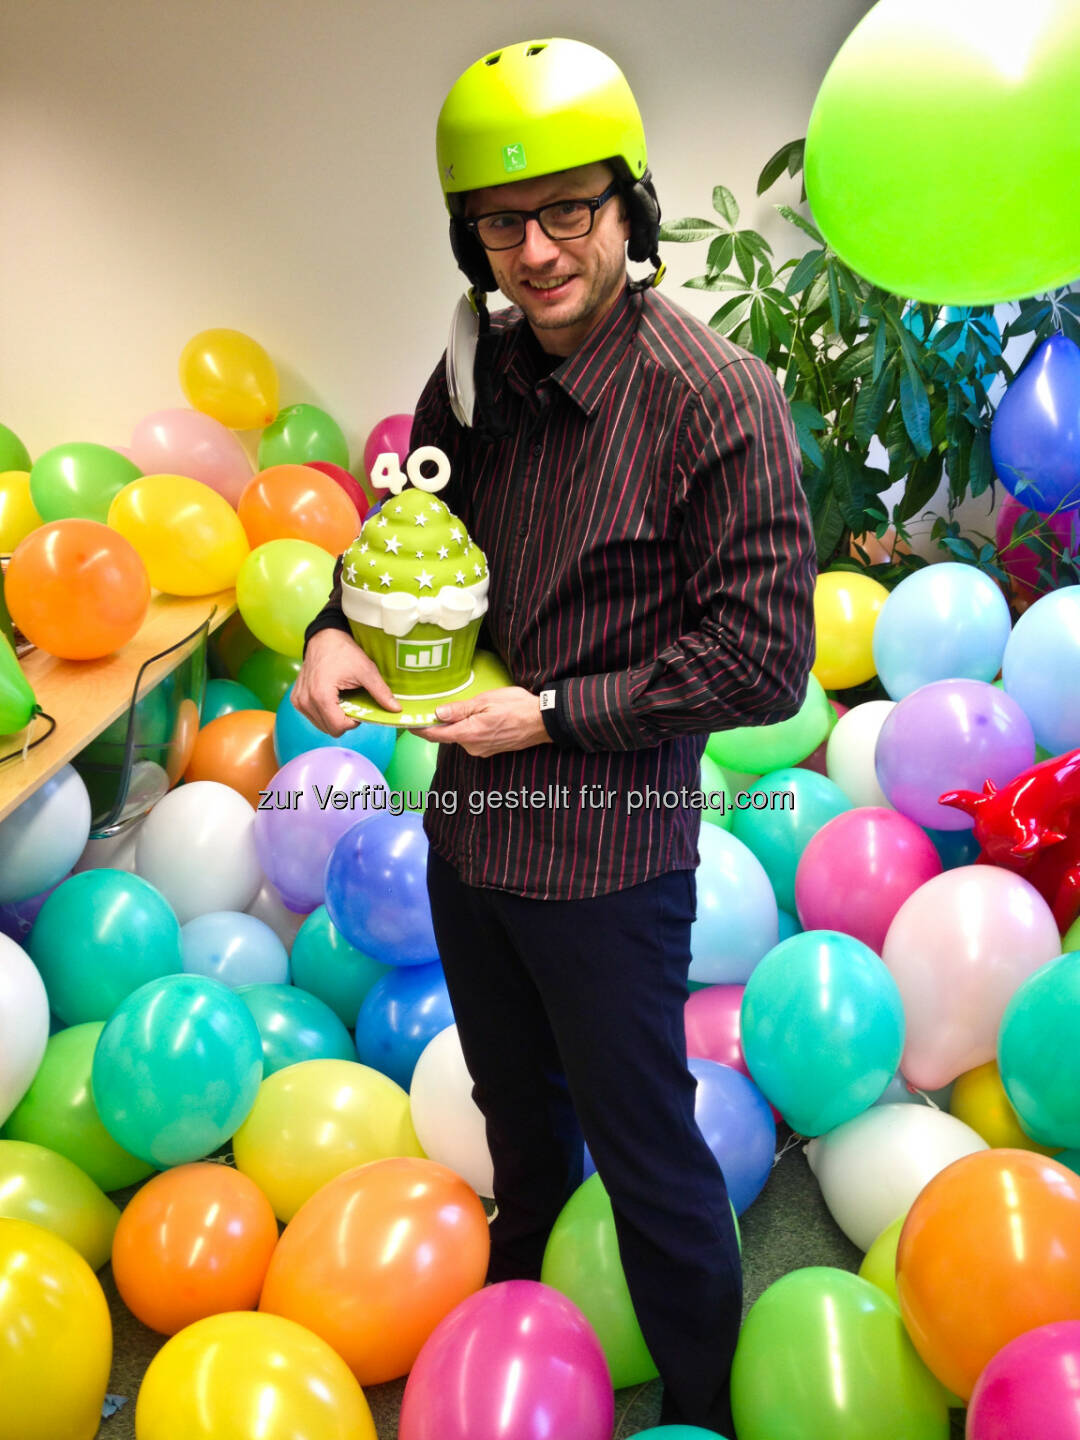 Eines der wikifolio.com Fotos des Jahres ist dieses vom Geburtstag von
wikifolio.com Geschäftsführer Andreas Kern: Mit grüner Torte, geschenktem Helm und einem Büro voller Luftballons!